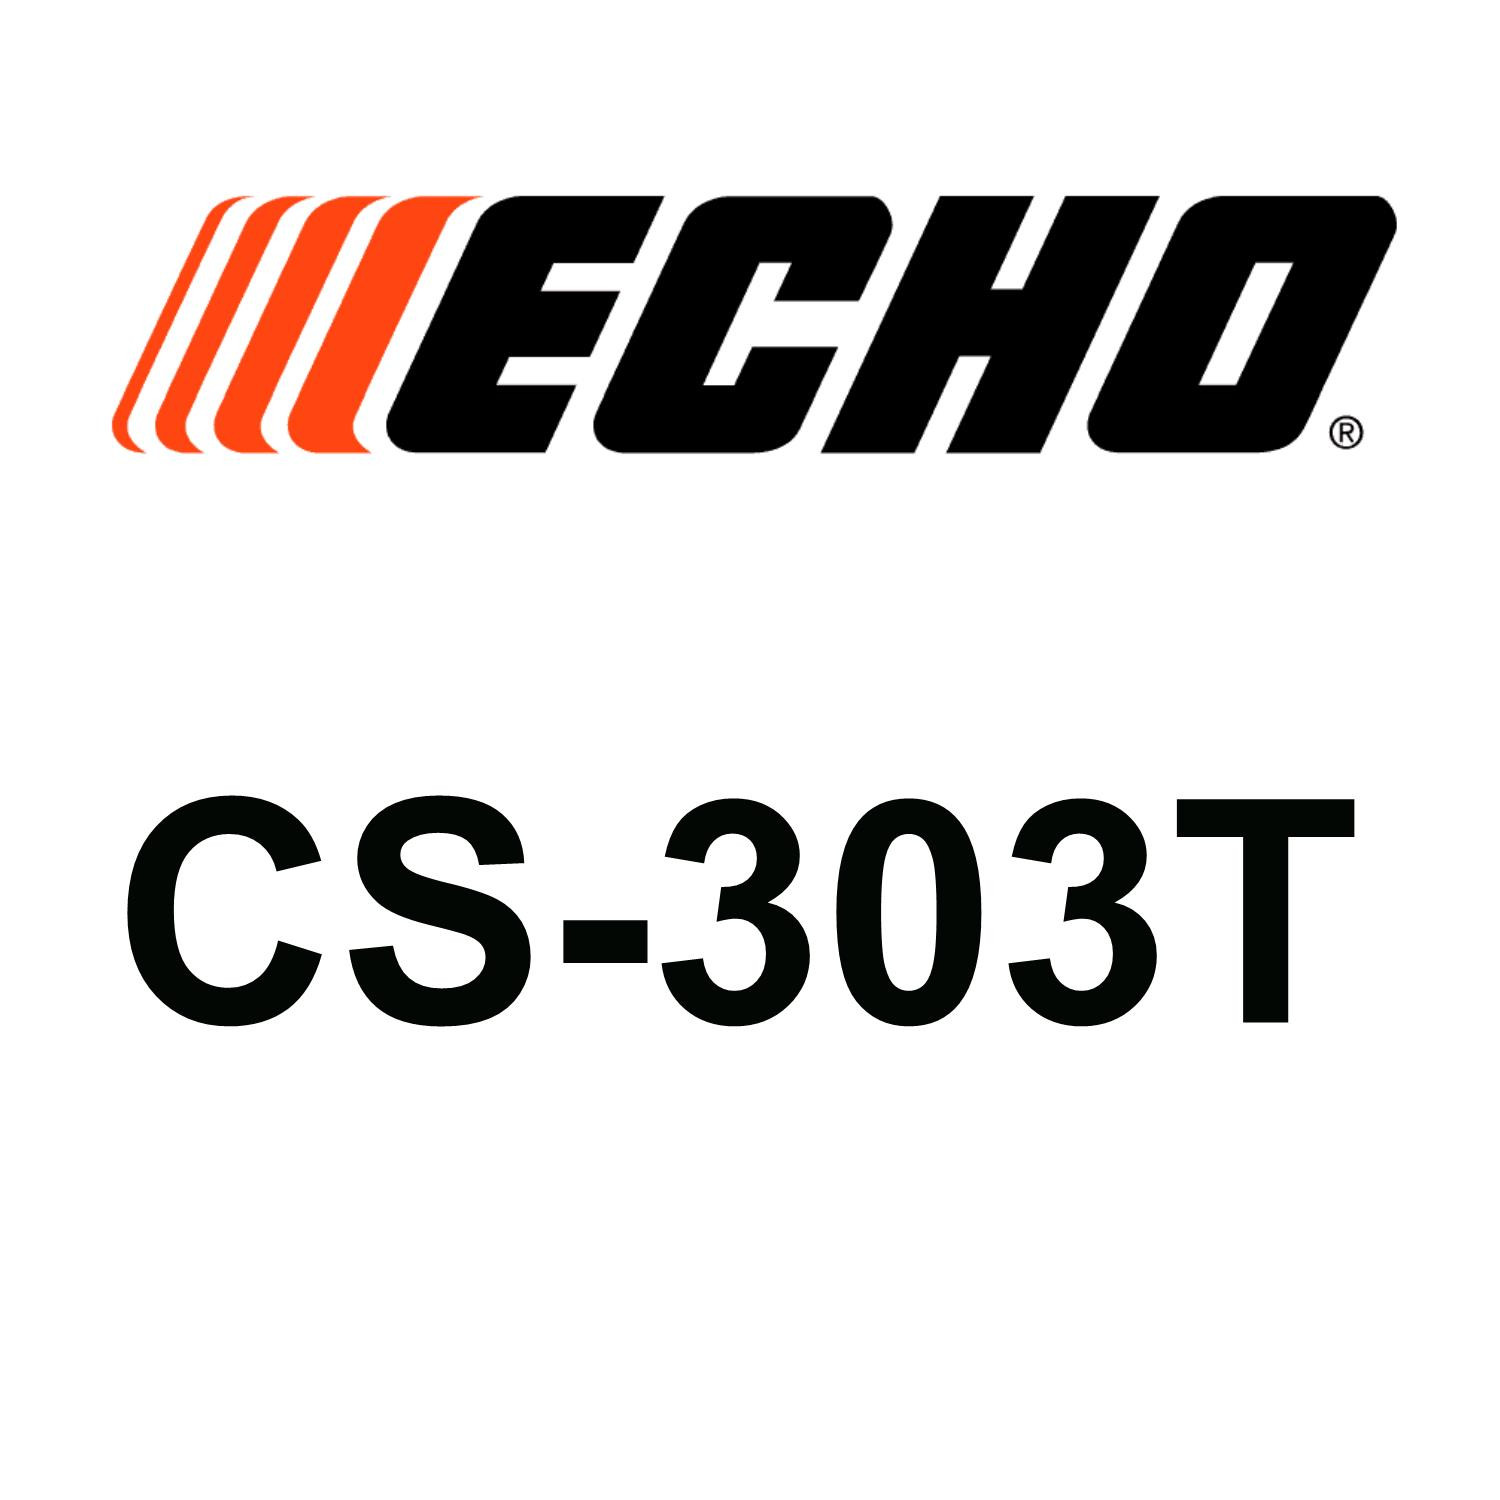 Echo CS-303T